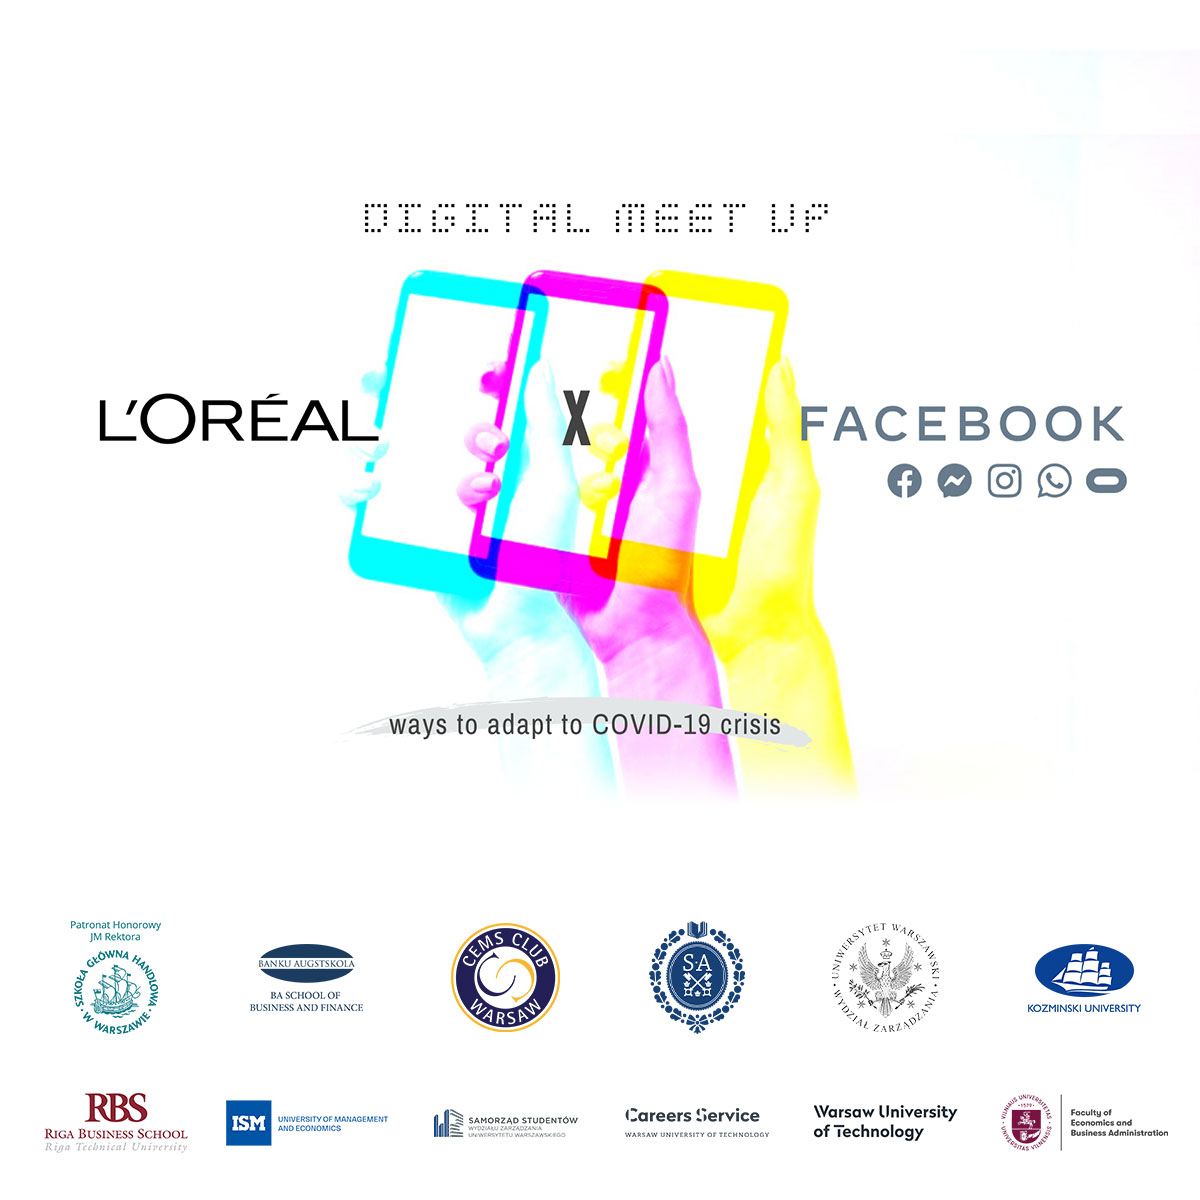 Digital MEET UP / Loreal x Facebook